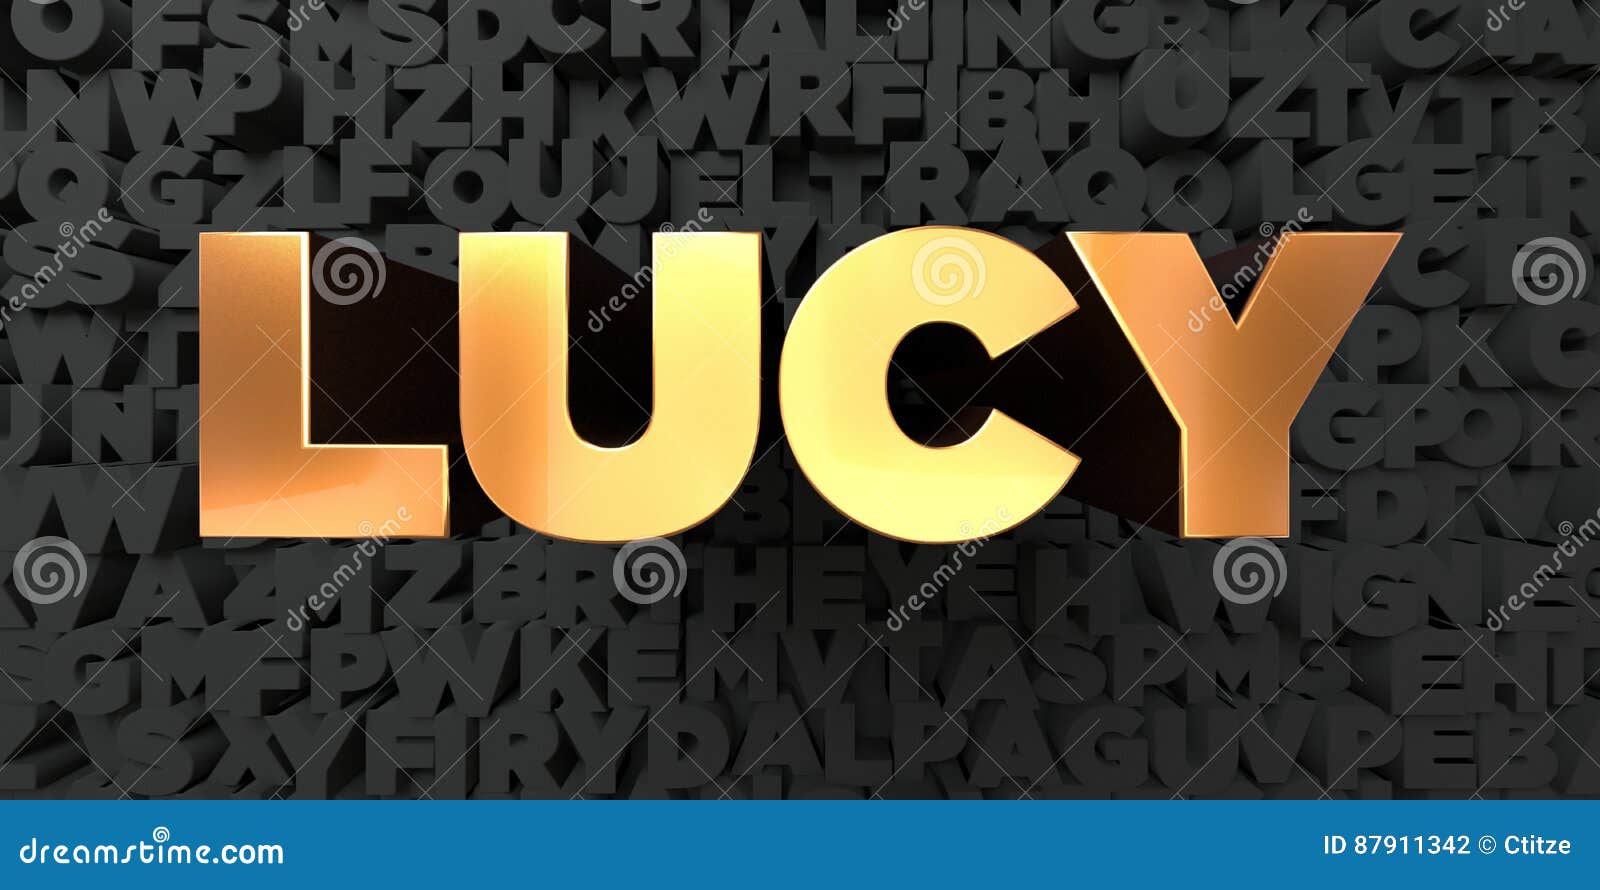 Lucy - Texto Do Ouro No Fundo Preto - 3D Rendeu a Imagem Conservada Em Estoque Livre Dos Direitos Ilustração Stock - Ilustração de alfabeto, preto: 87911342